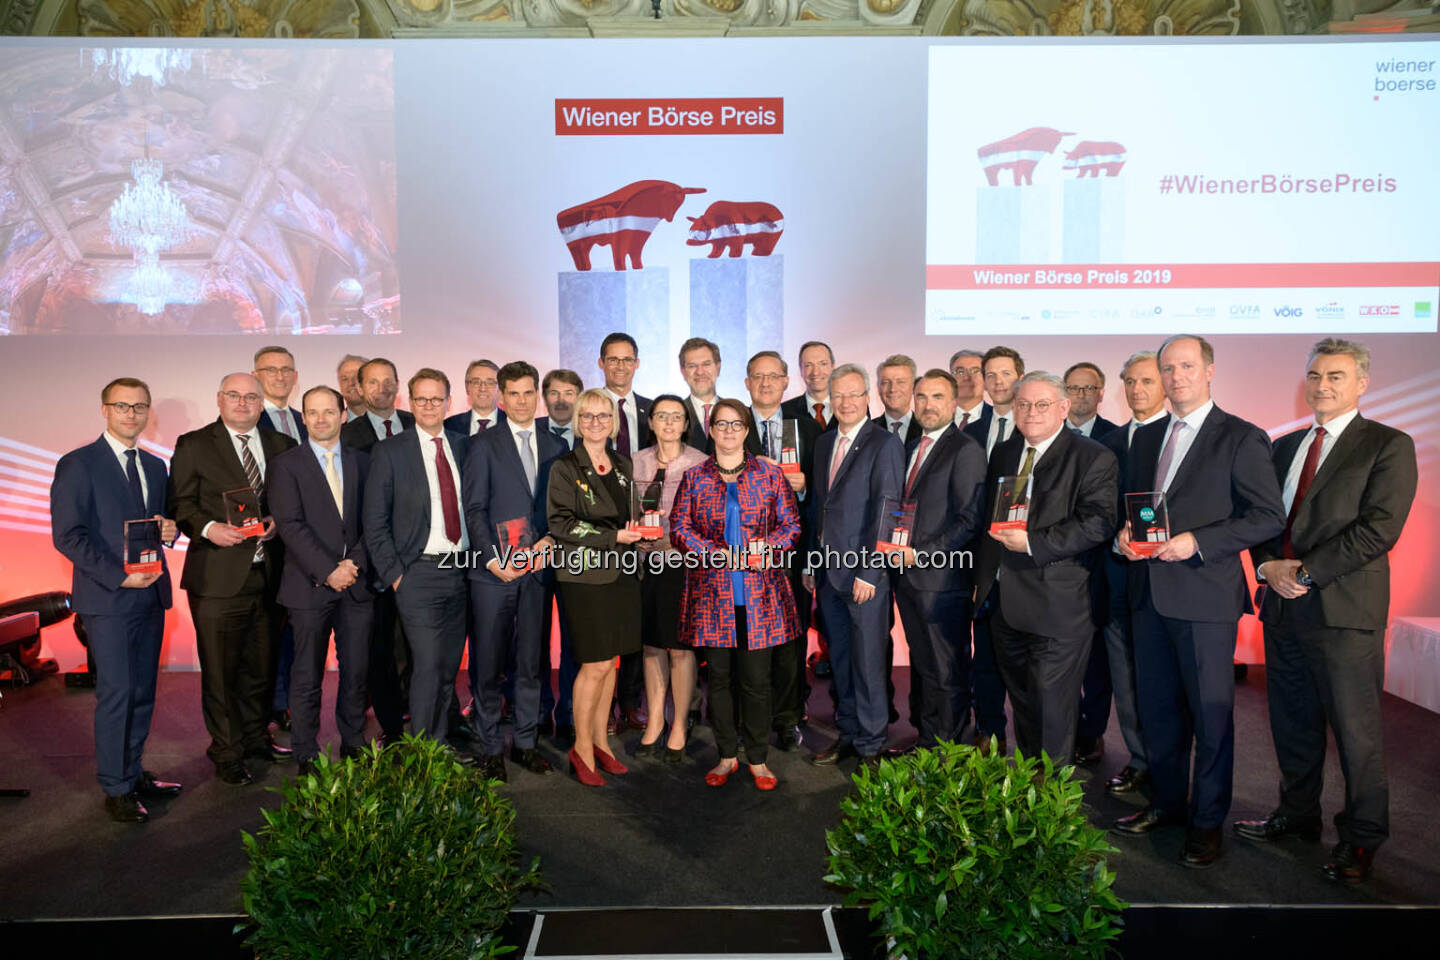 Wiener Börse Preis 2019 - Siegerbild